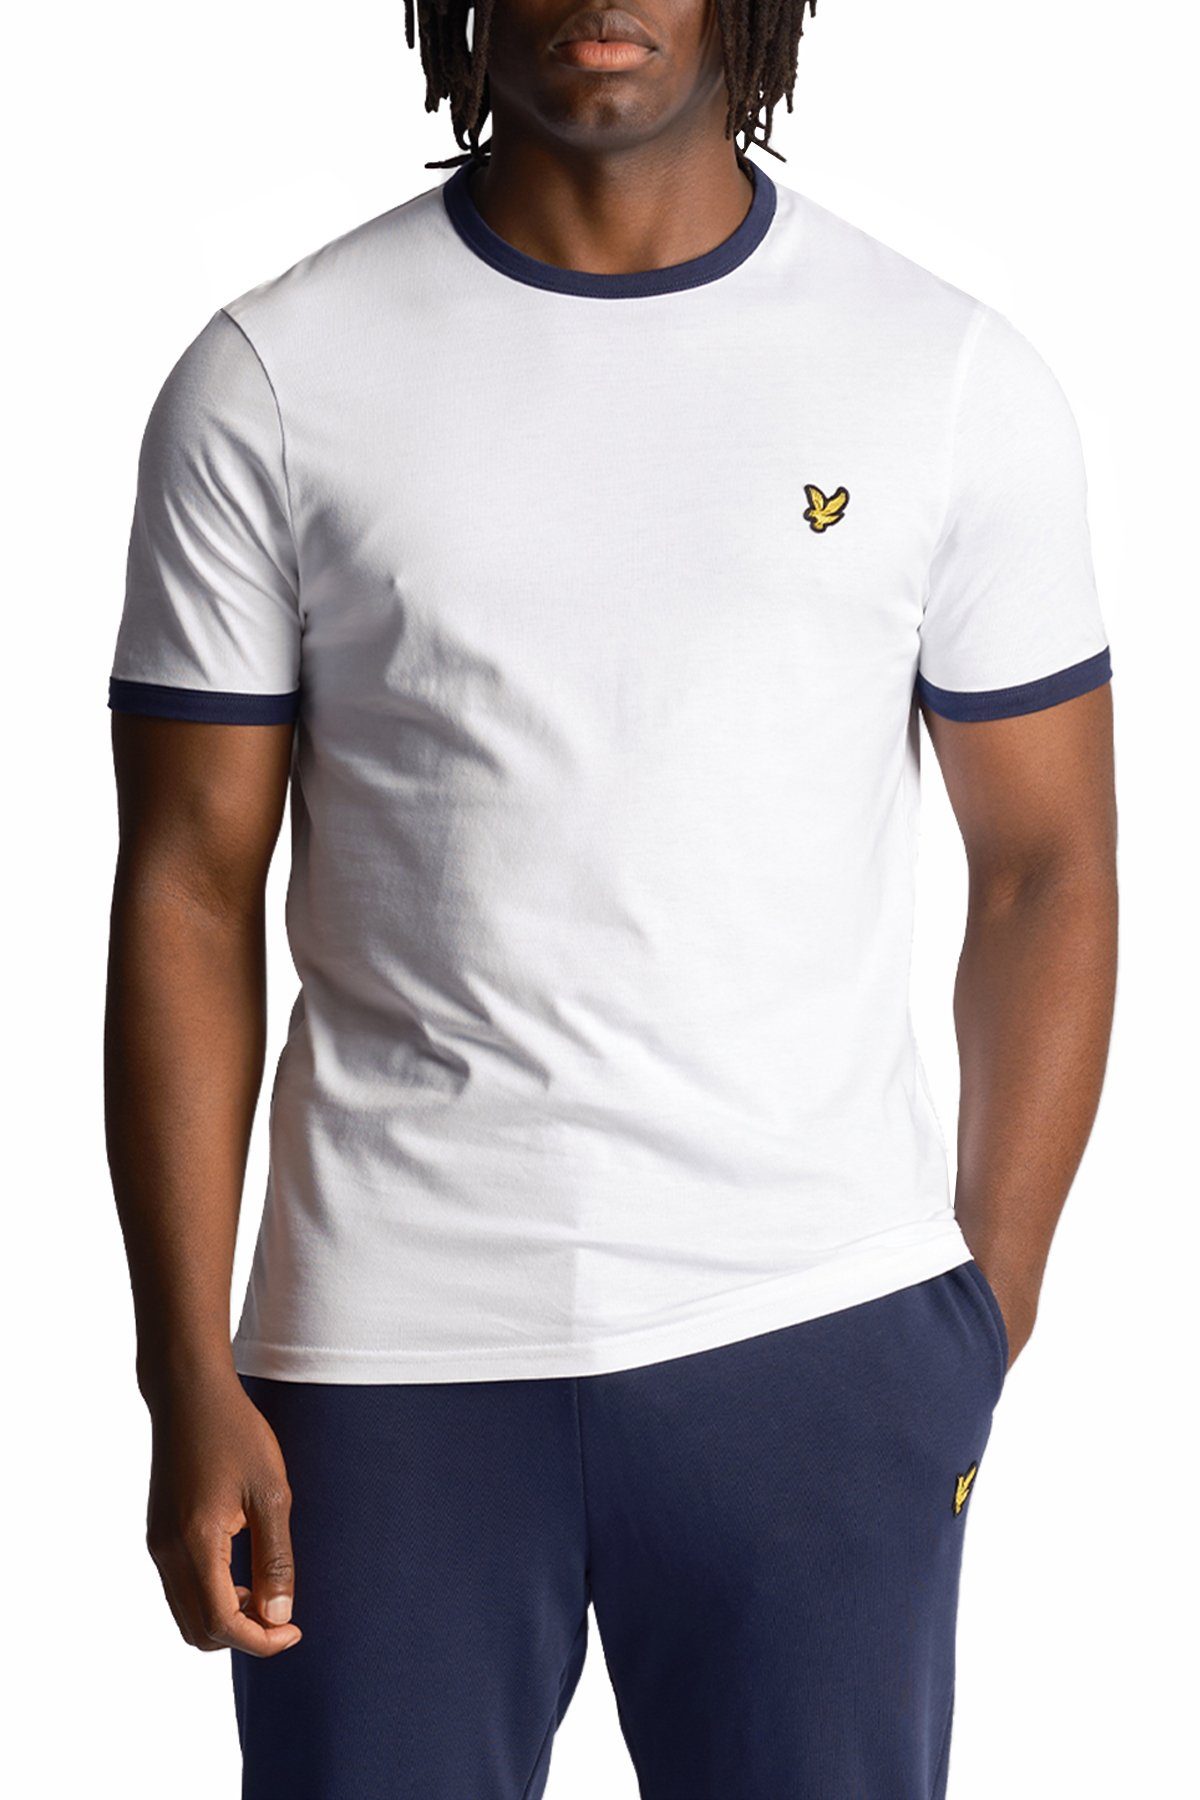 Uhrengeschäft Lyle & Scott Kontrastierender Zierleiste Weiß/Marine Mit T-Shirt